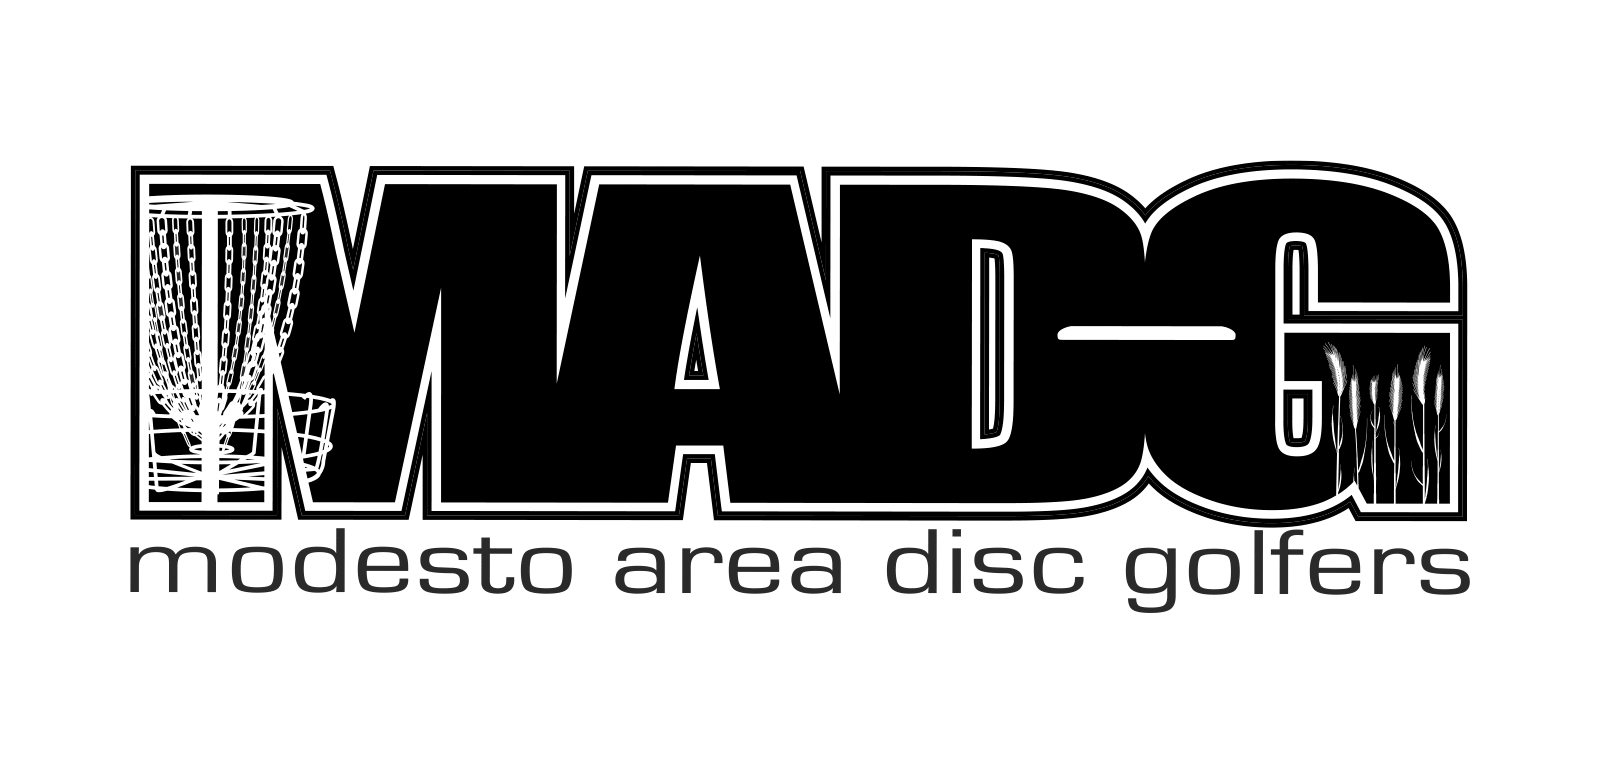 MADG-logo-black - Jordan Gausling-1.png